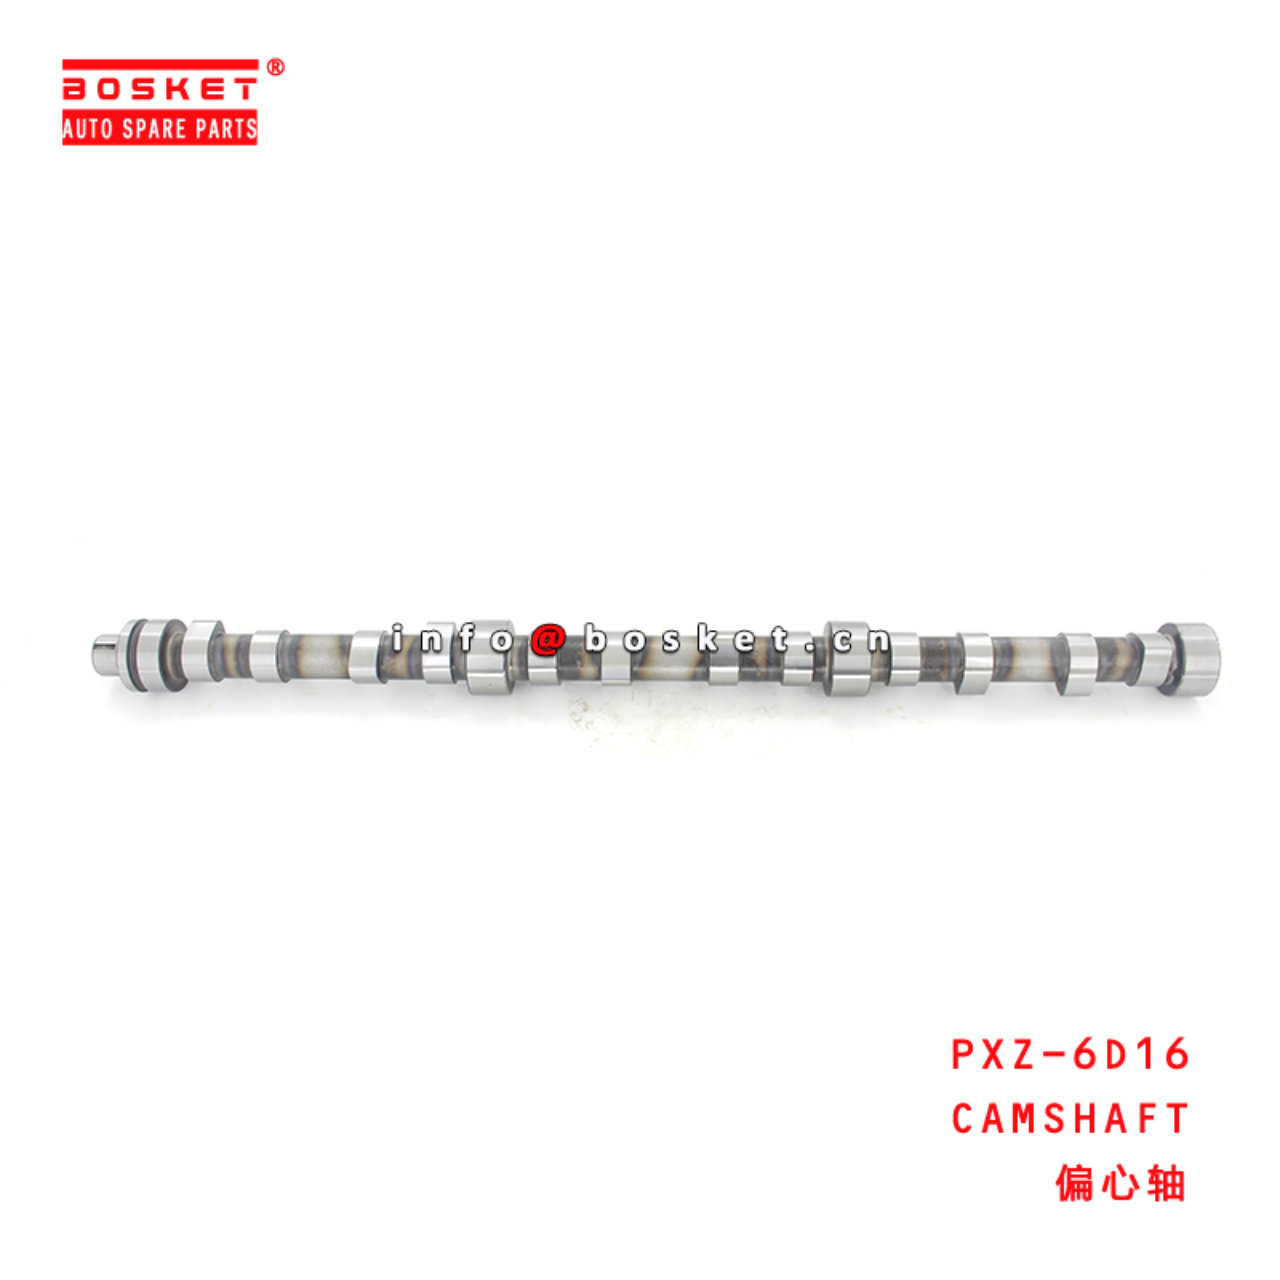 PXZ-6D16 Camshaft Suitable for ISUZU  6D16